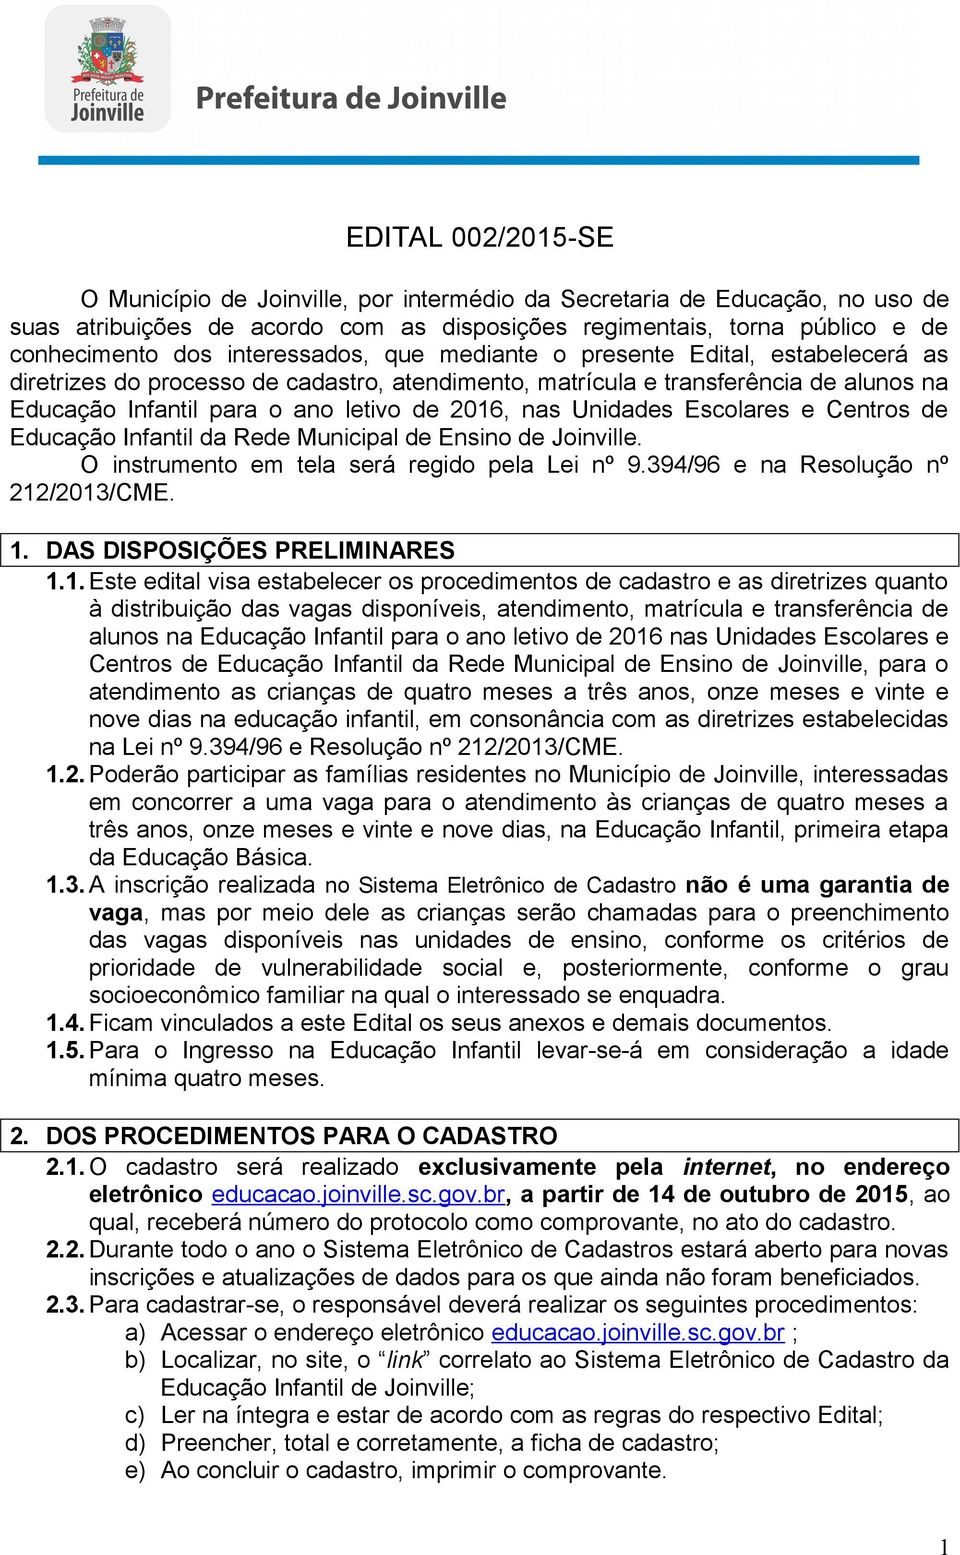 Unidades Escolares e Centros de Educação Infantil da Rede Municipal de Ensino de Joinville. O instrumento em tela será regido pela Lei nº 9.394/96 e na Resolução nº 212/2013/CME. 1.